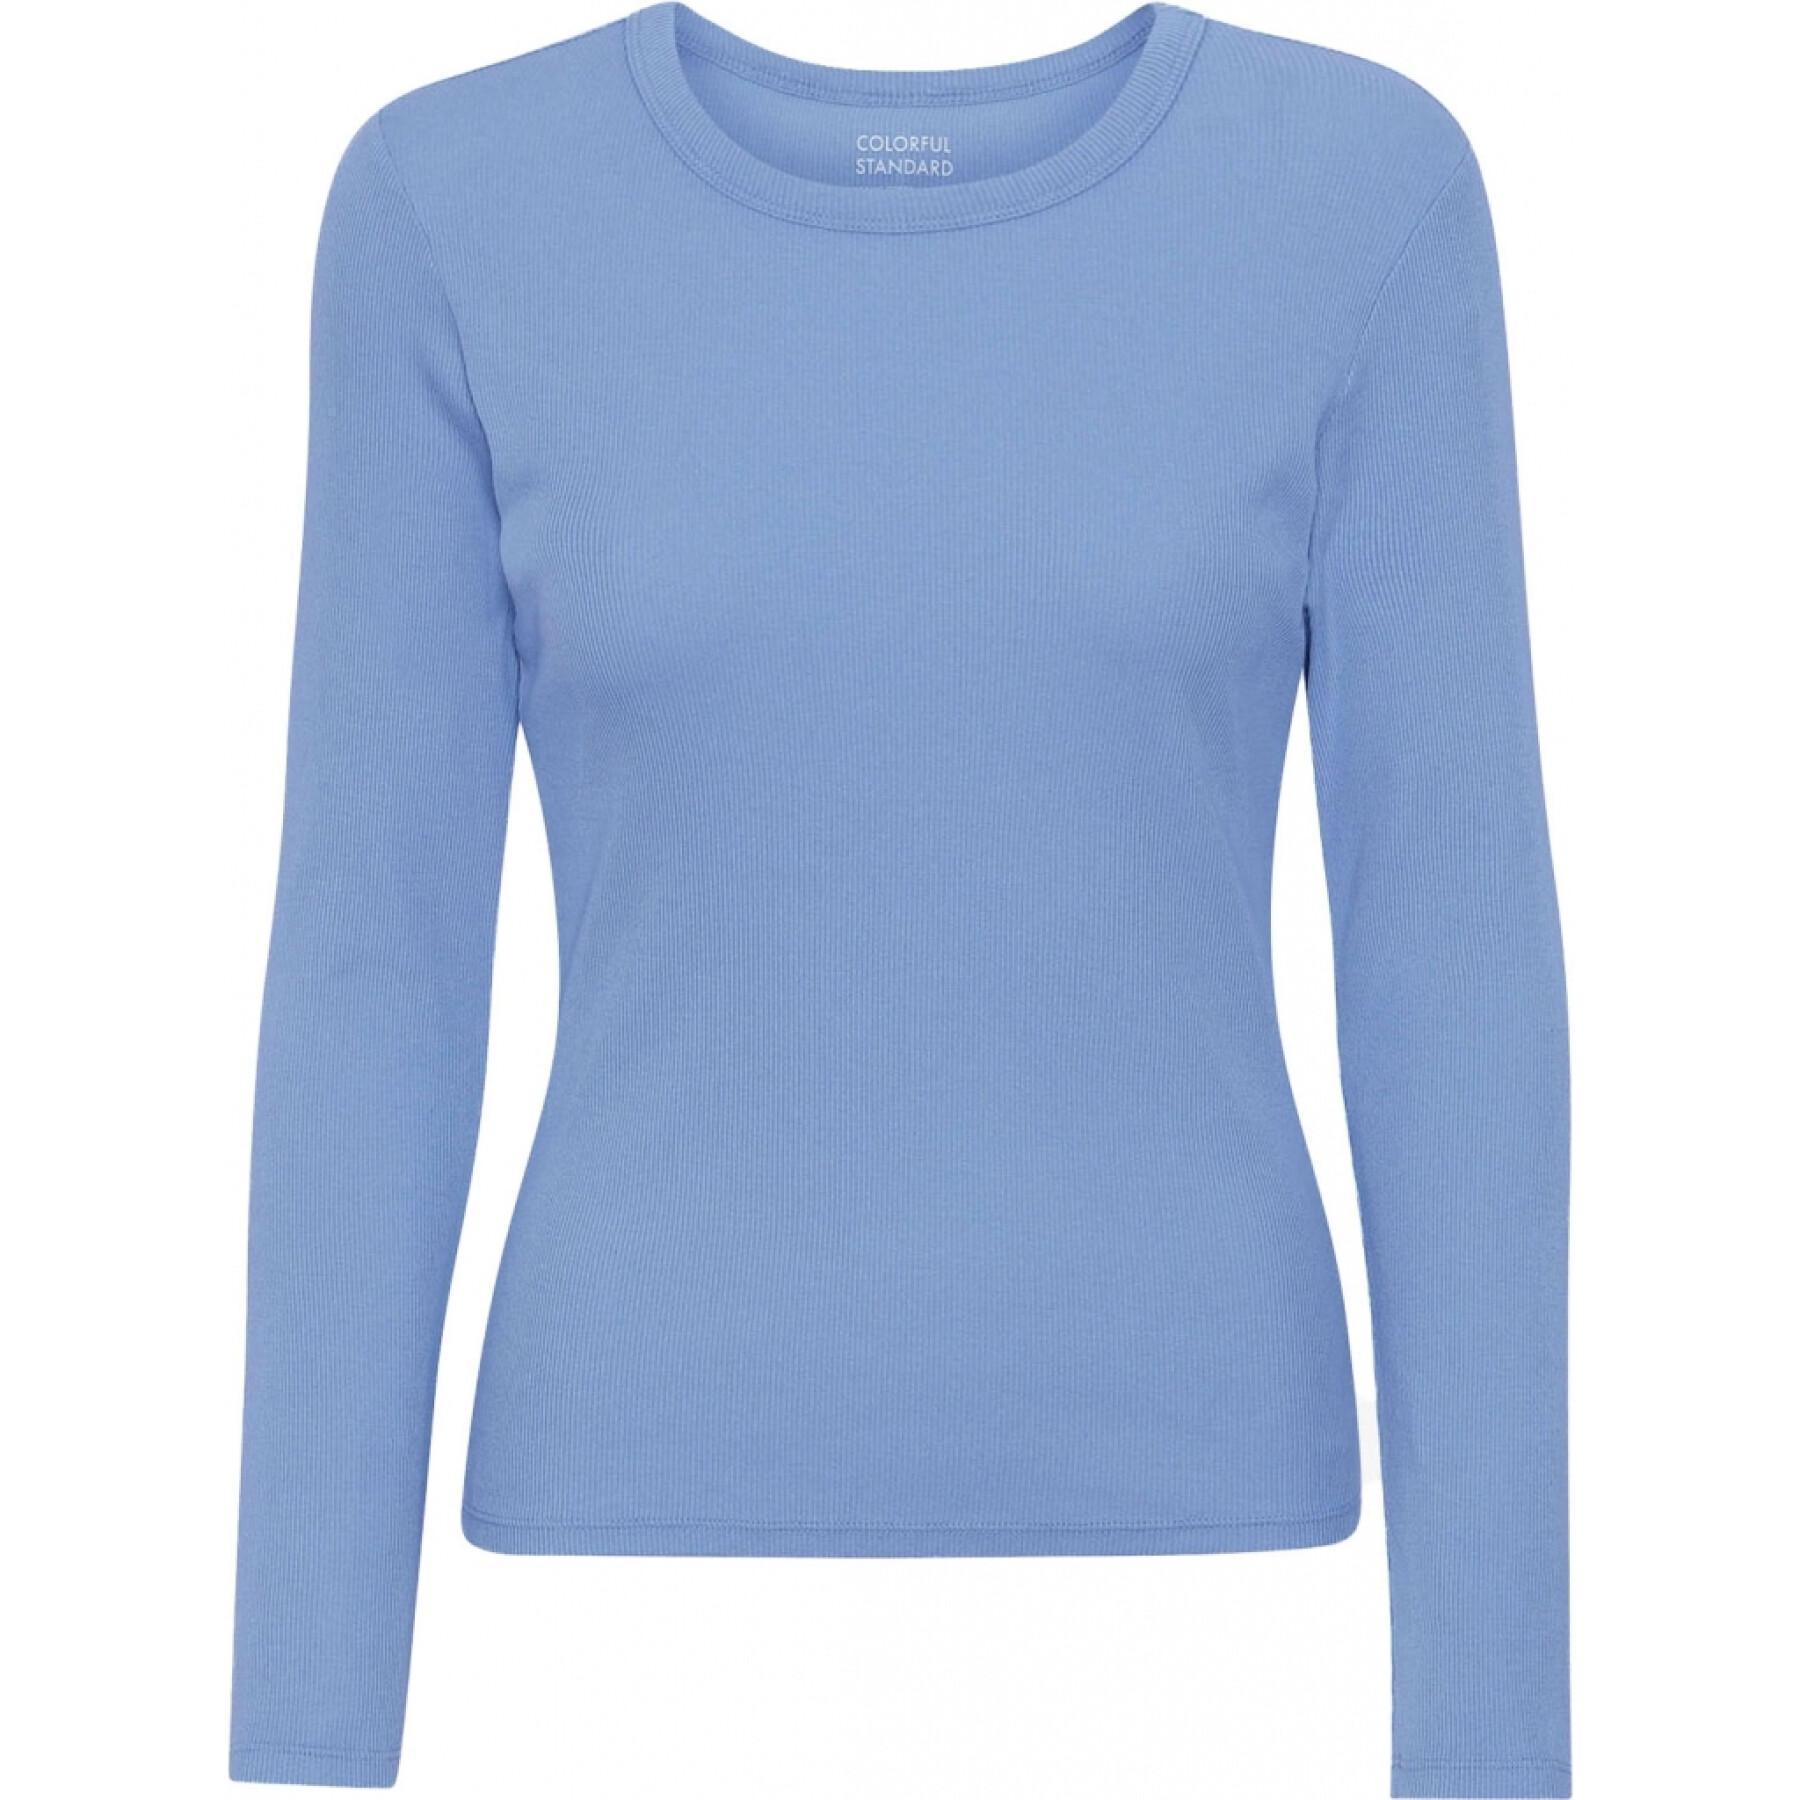 Geripptes T-Shirt mit langen Ärmeln, Frau Colorful Standard Organic sky blue